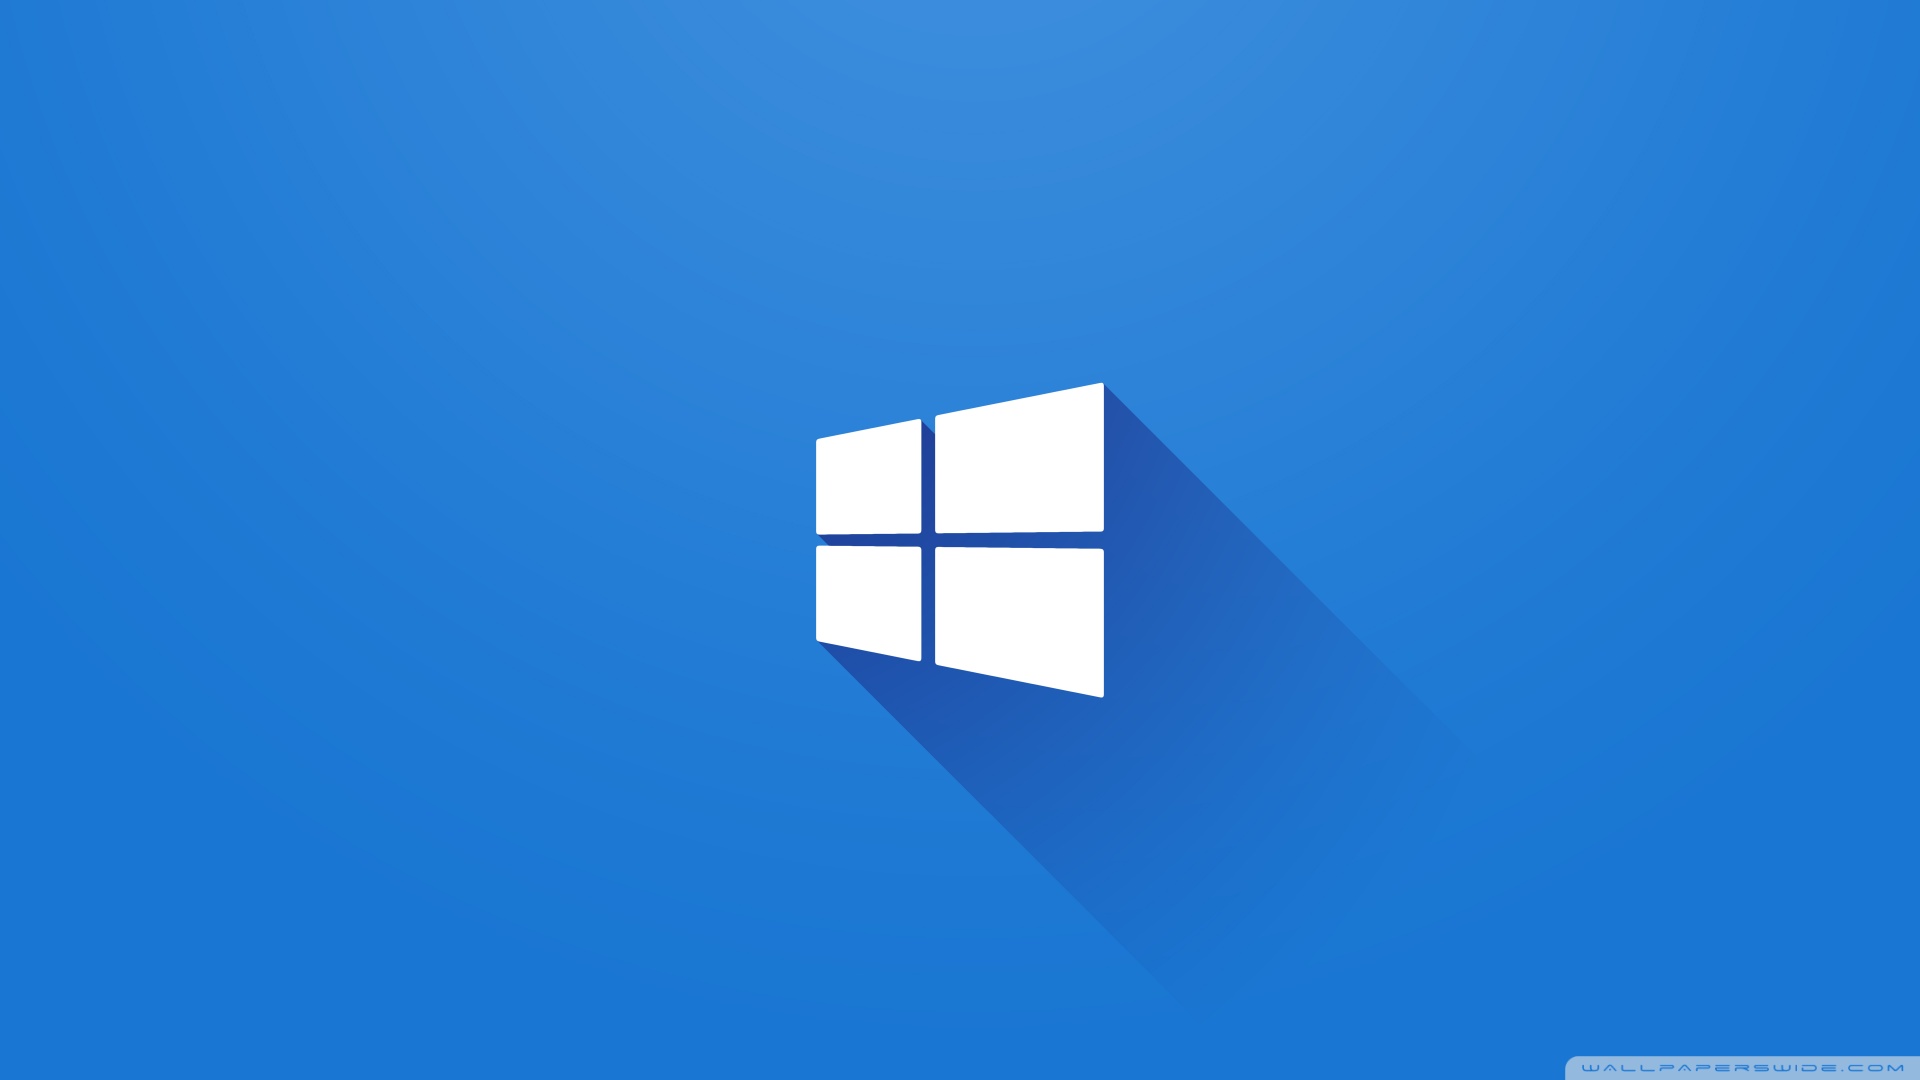 Cửa hàng Windows 10 bạn đang gặp vấn đề sao? Hãy xem hình ảnh liên quan để giải quyết tình trạng của bạn và trải nghiệm trọn vẹn dịch vụ mua sắm từ Microsoft.